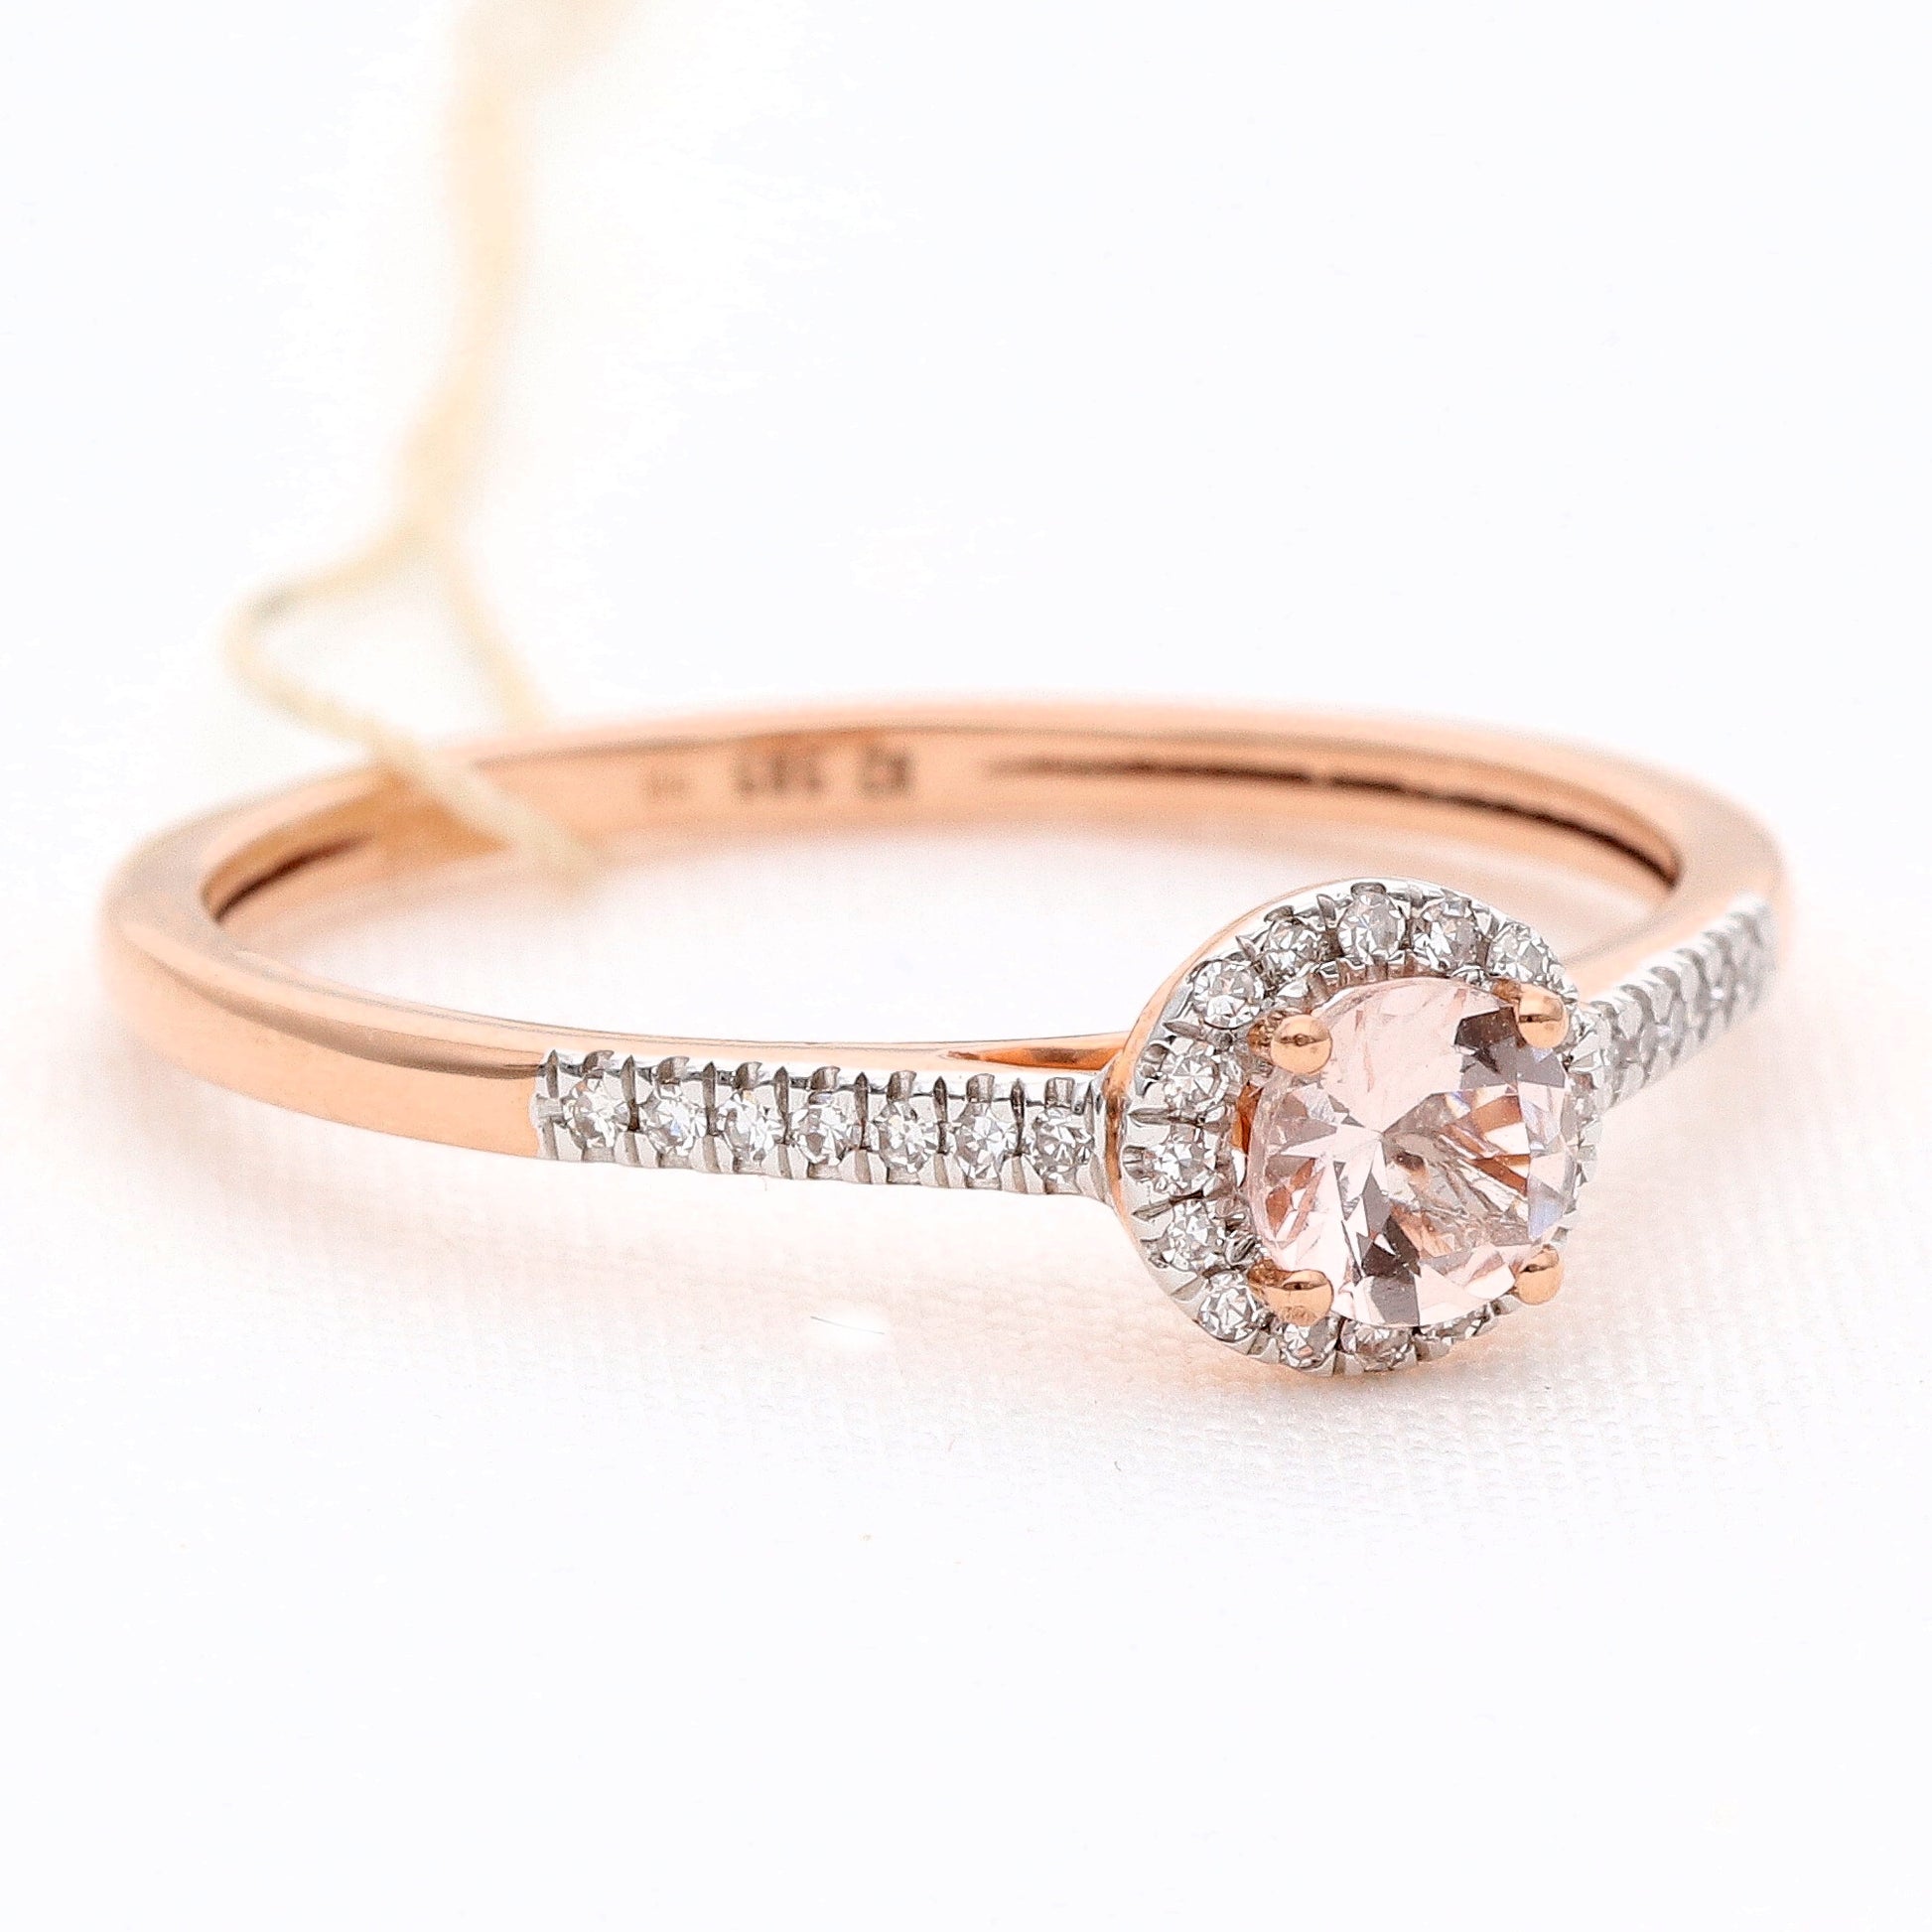 Auksinis žiedas su deimantais 0,14ct vestuviniaiziedai.lt